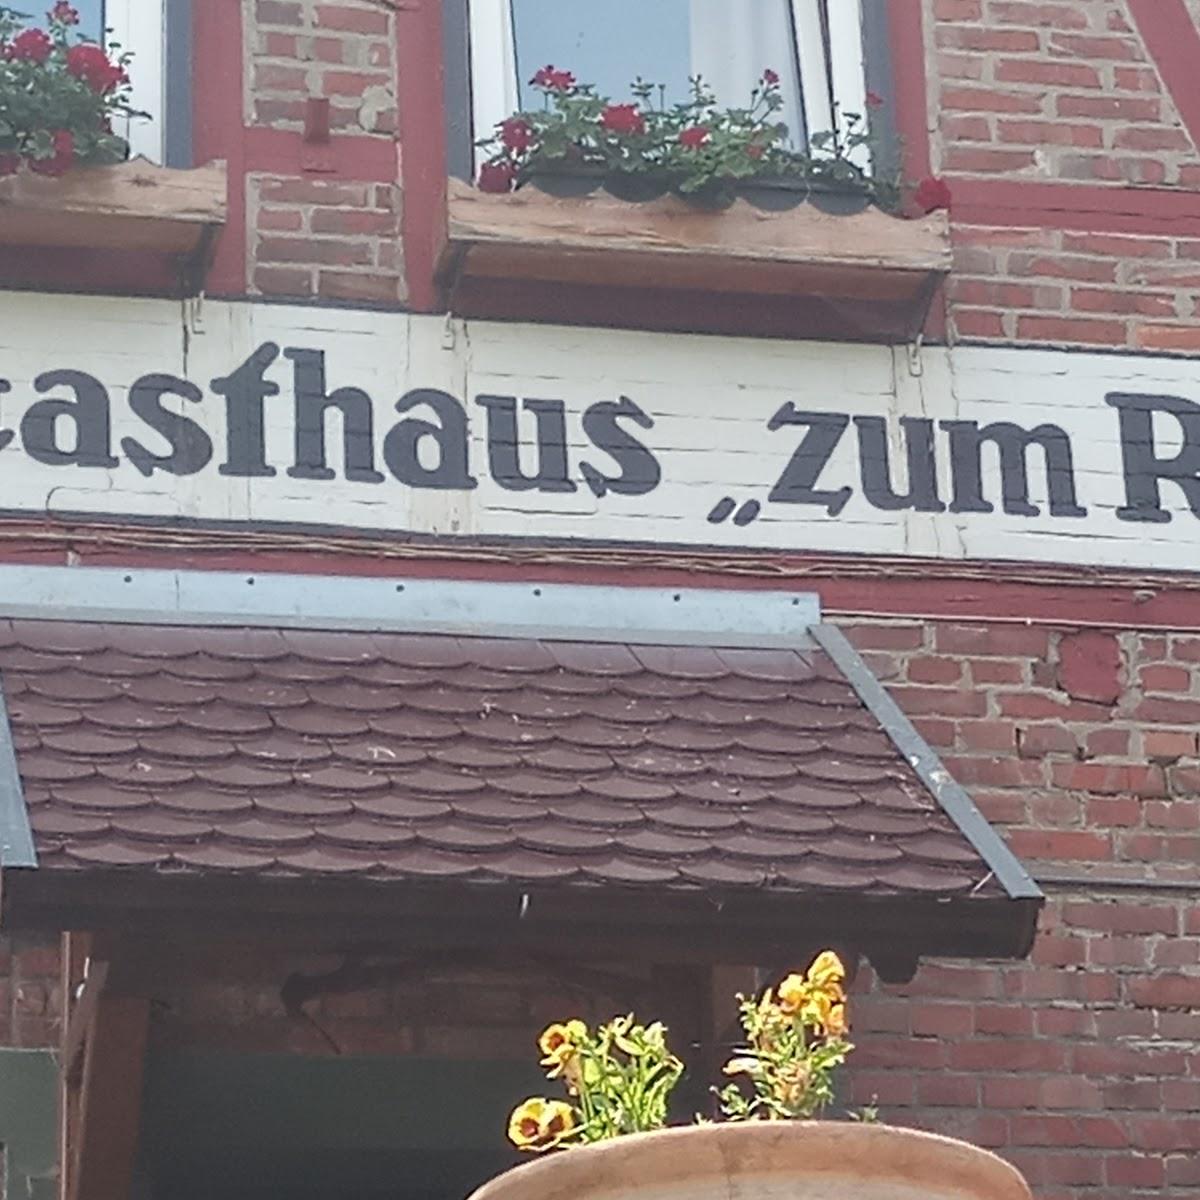 Restaurant "Gaststätte Rübchen" in Thale